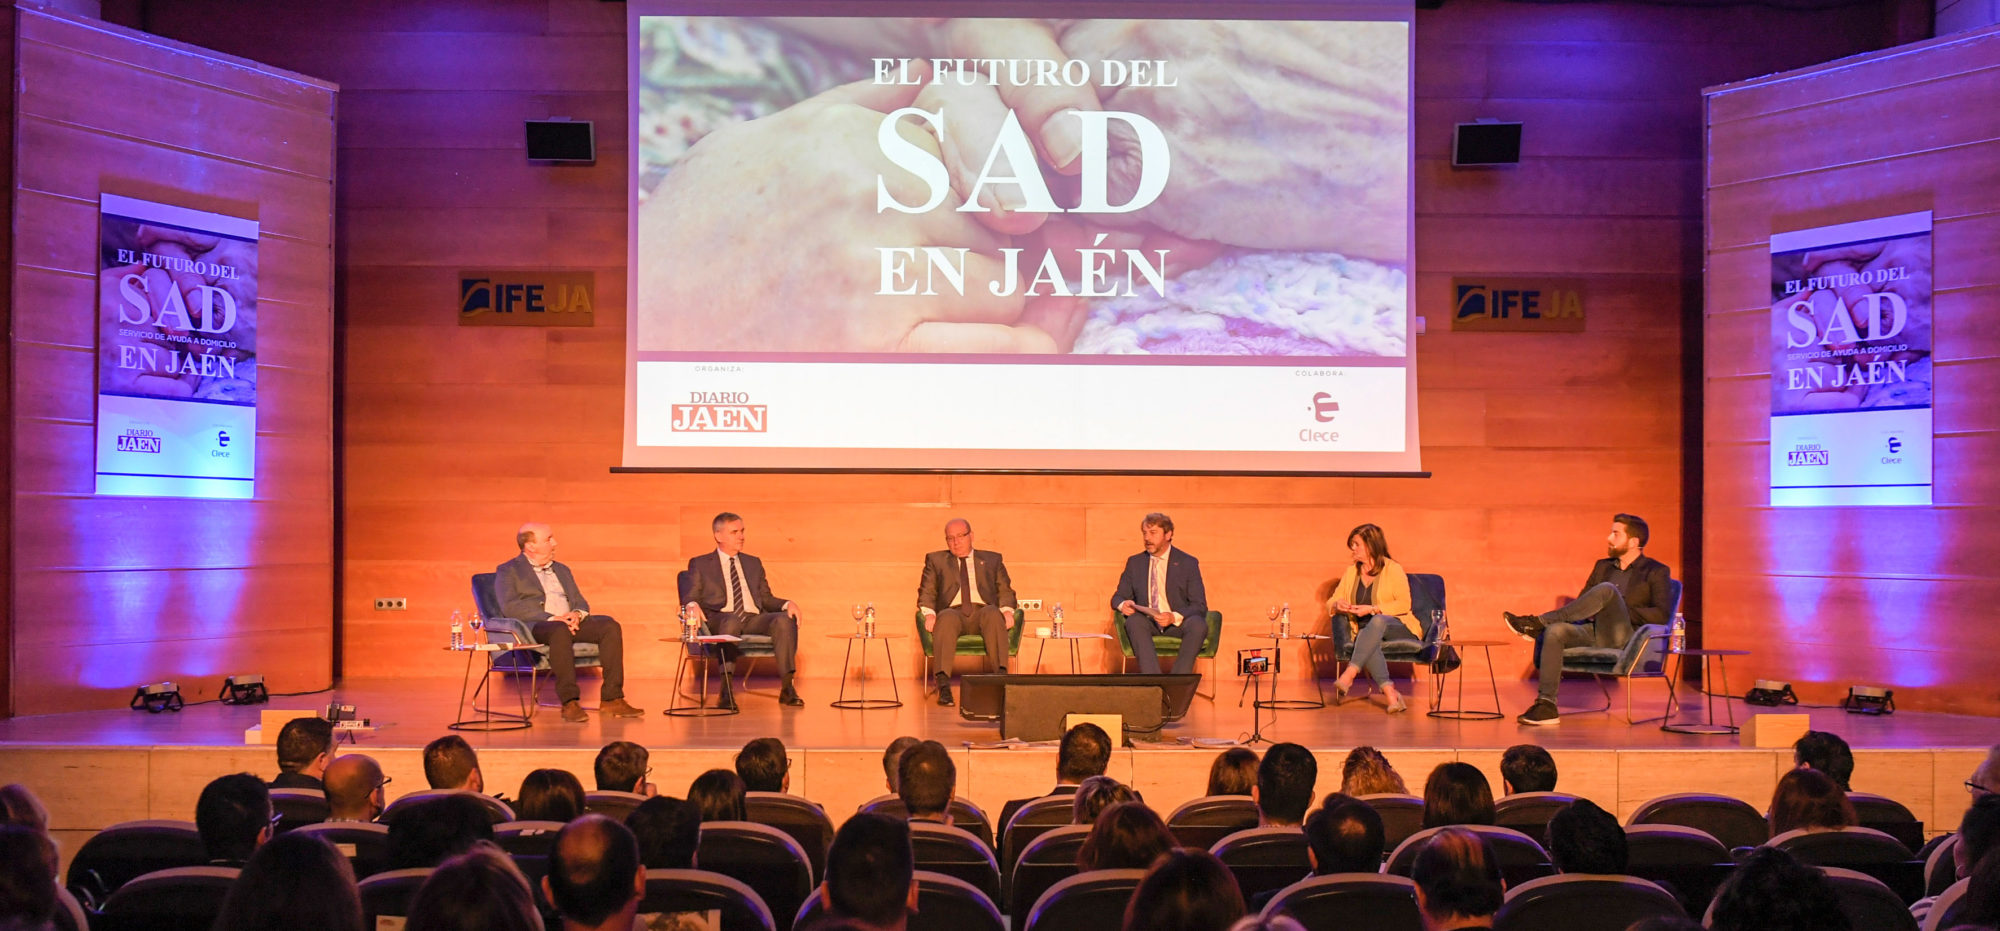 Més finançament i dignificació del sector, alguns dels reptes del futur del SAD debatuts en el Fòrum de Jaén